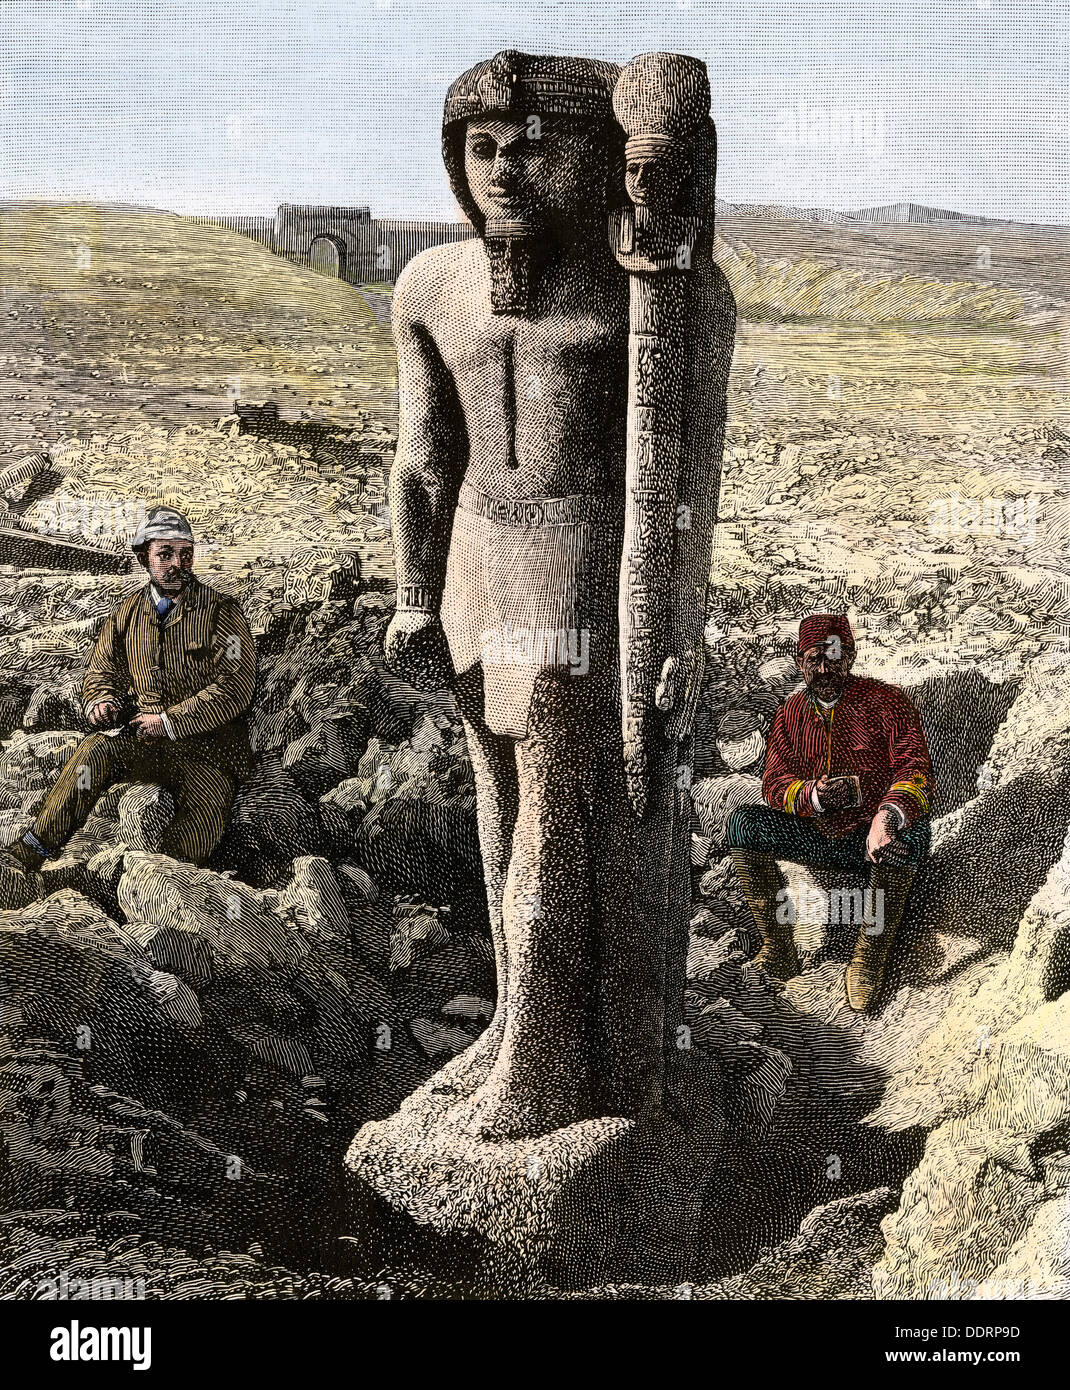 Arqueólogo excavando una estatua de Rameses II en Egipto, a fines del 1800. Xilografía coloreada a mano Foto de stock